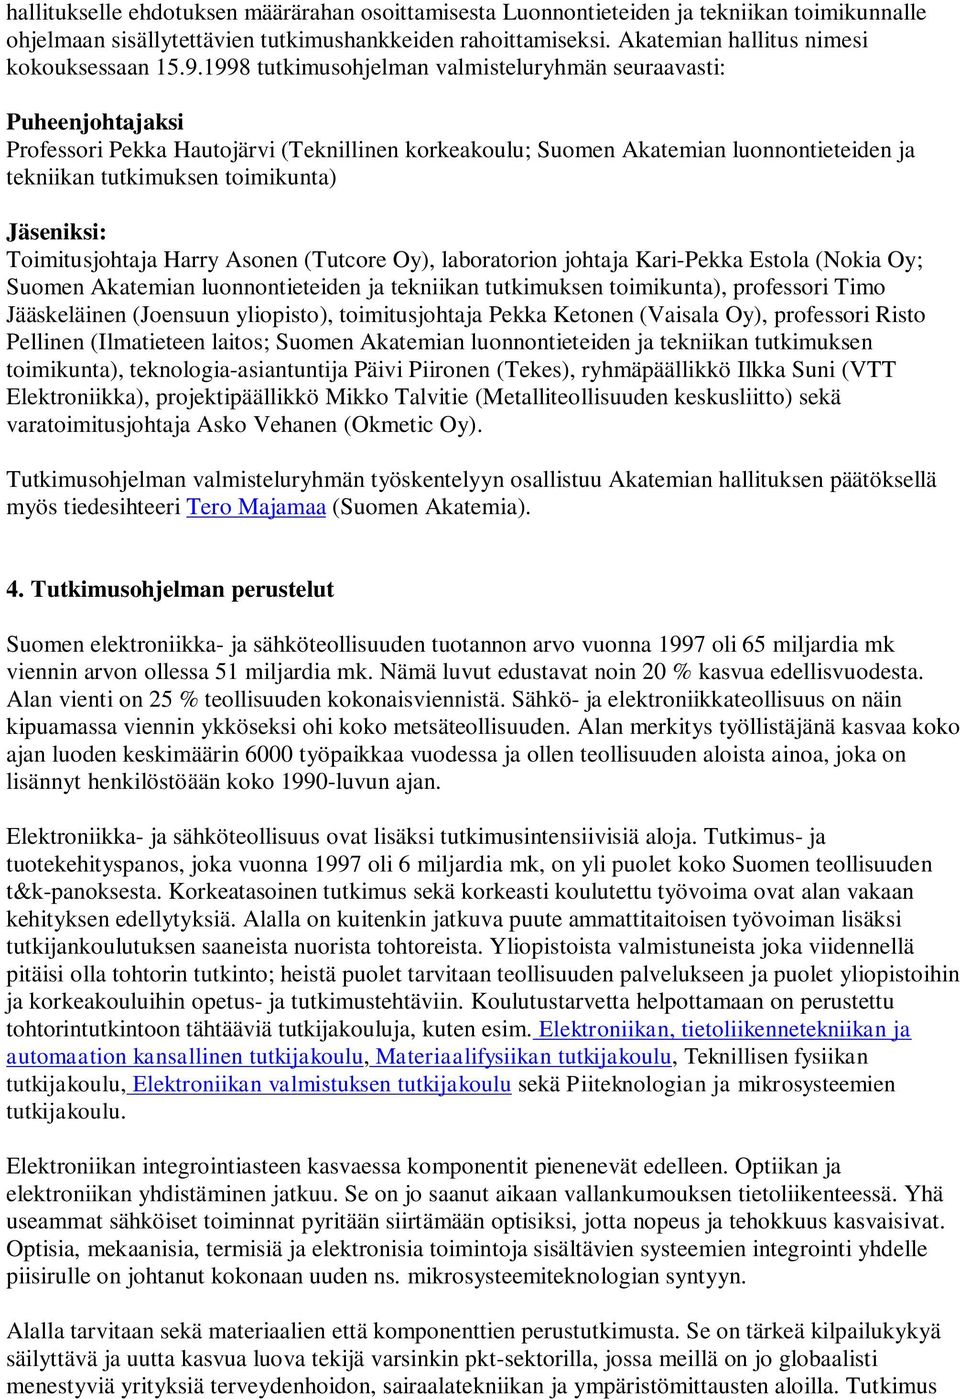 1998 tutkimusohjelman valmisteluryhmän seuraavasti: Puheenjohtajaksi Professori Pekka Hautojärvi (Teknillinen korkeakoulu; Suomen Akatemian luonnontieteiden ja tekniikan tutkimuksen toimikunta)